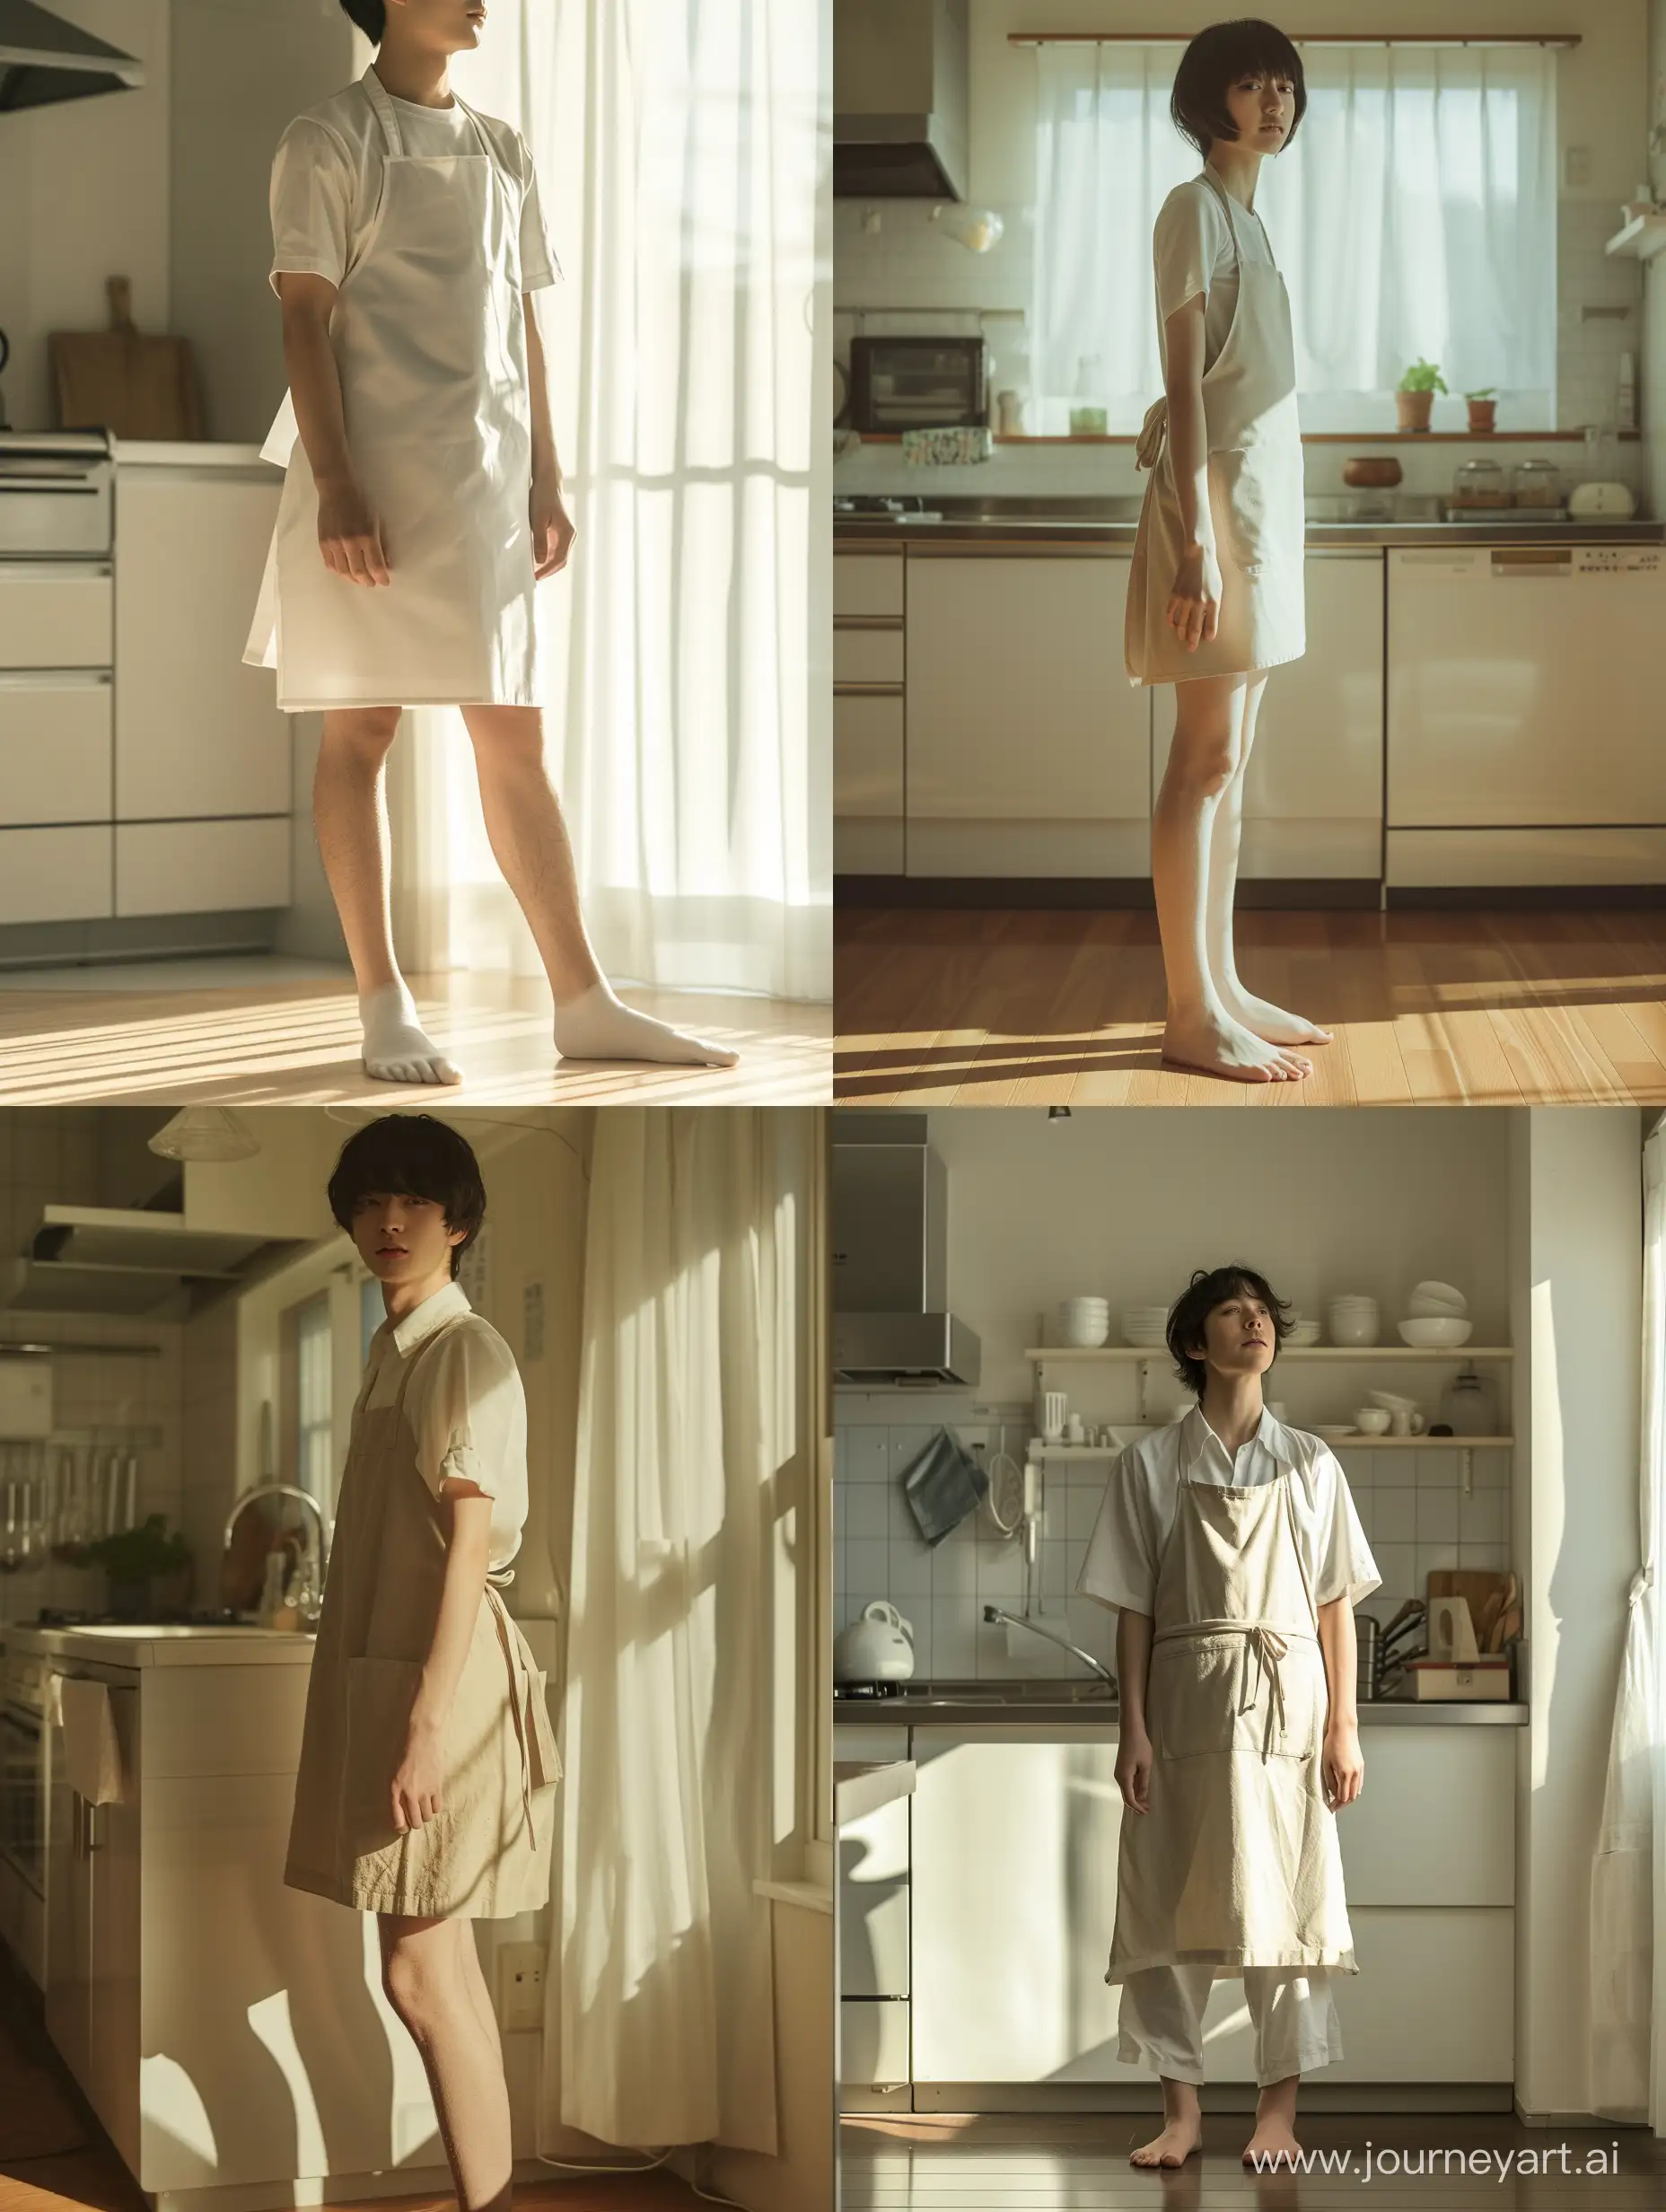 リアルな写真。美しい日本人女性がエプロンをしてキッチンに立っている。頭も含めた全身が写っている。朝日が入る明るいキッチン。足は少し開いて立っている。恥ずかしい表情で目を逸らしている。